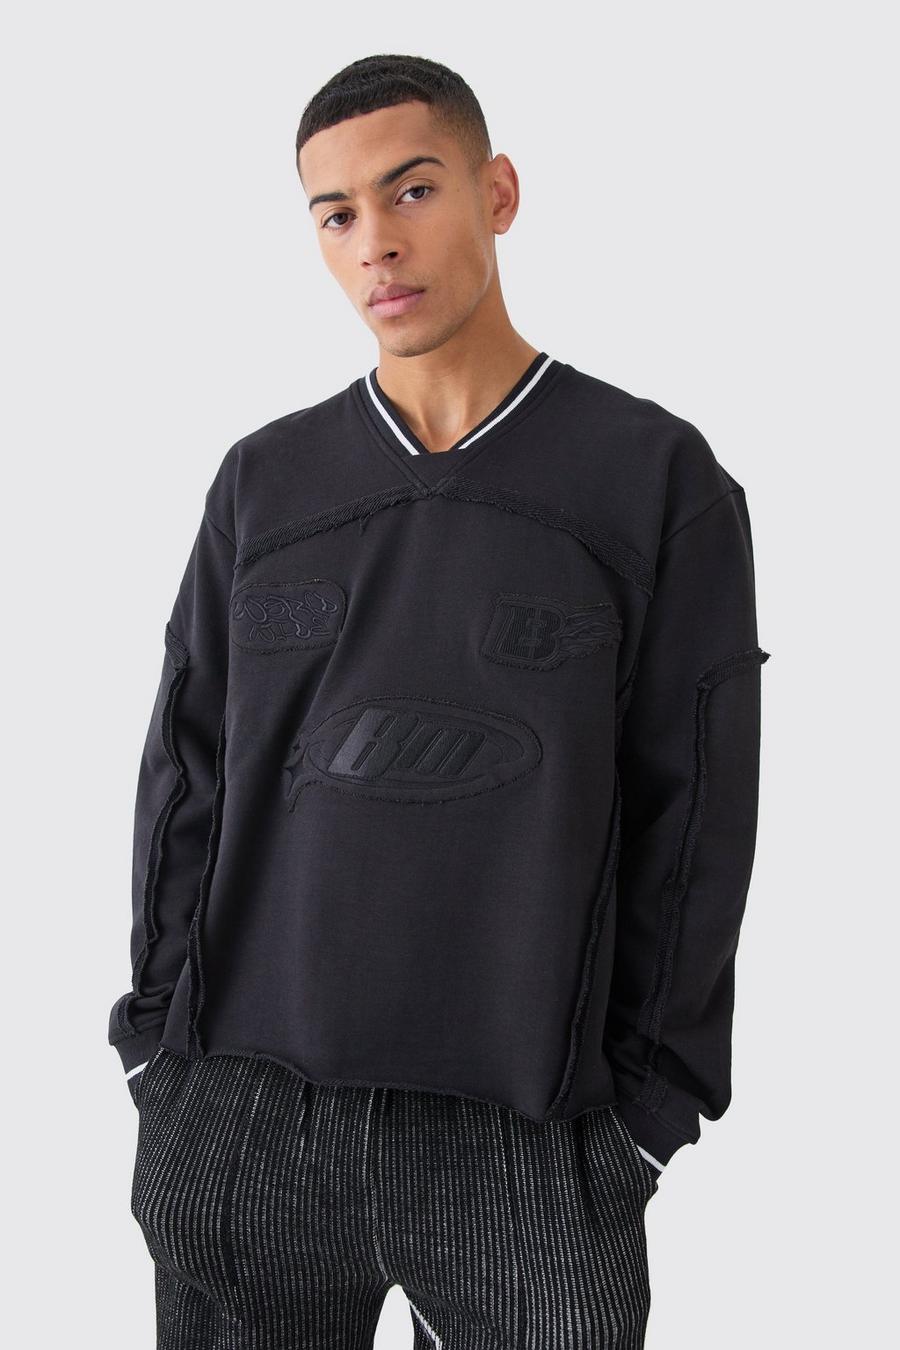 Kastiges geripptes Oversize Sweatshirt mit Stickerei, Black